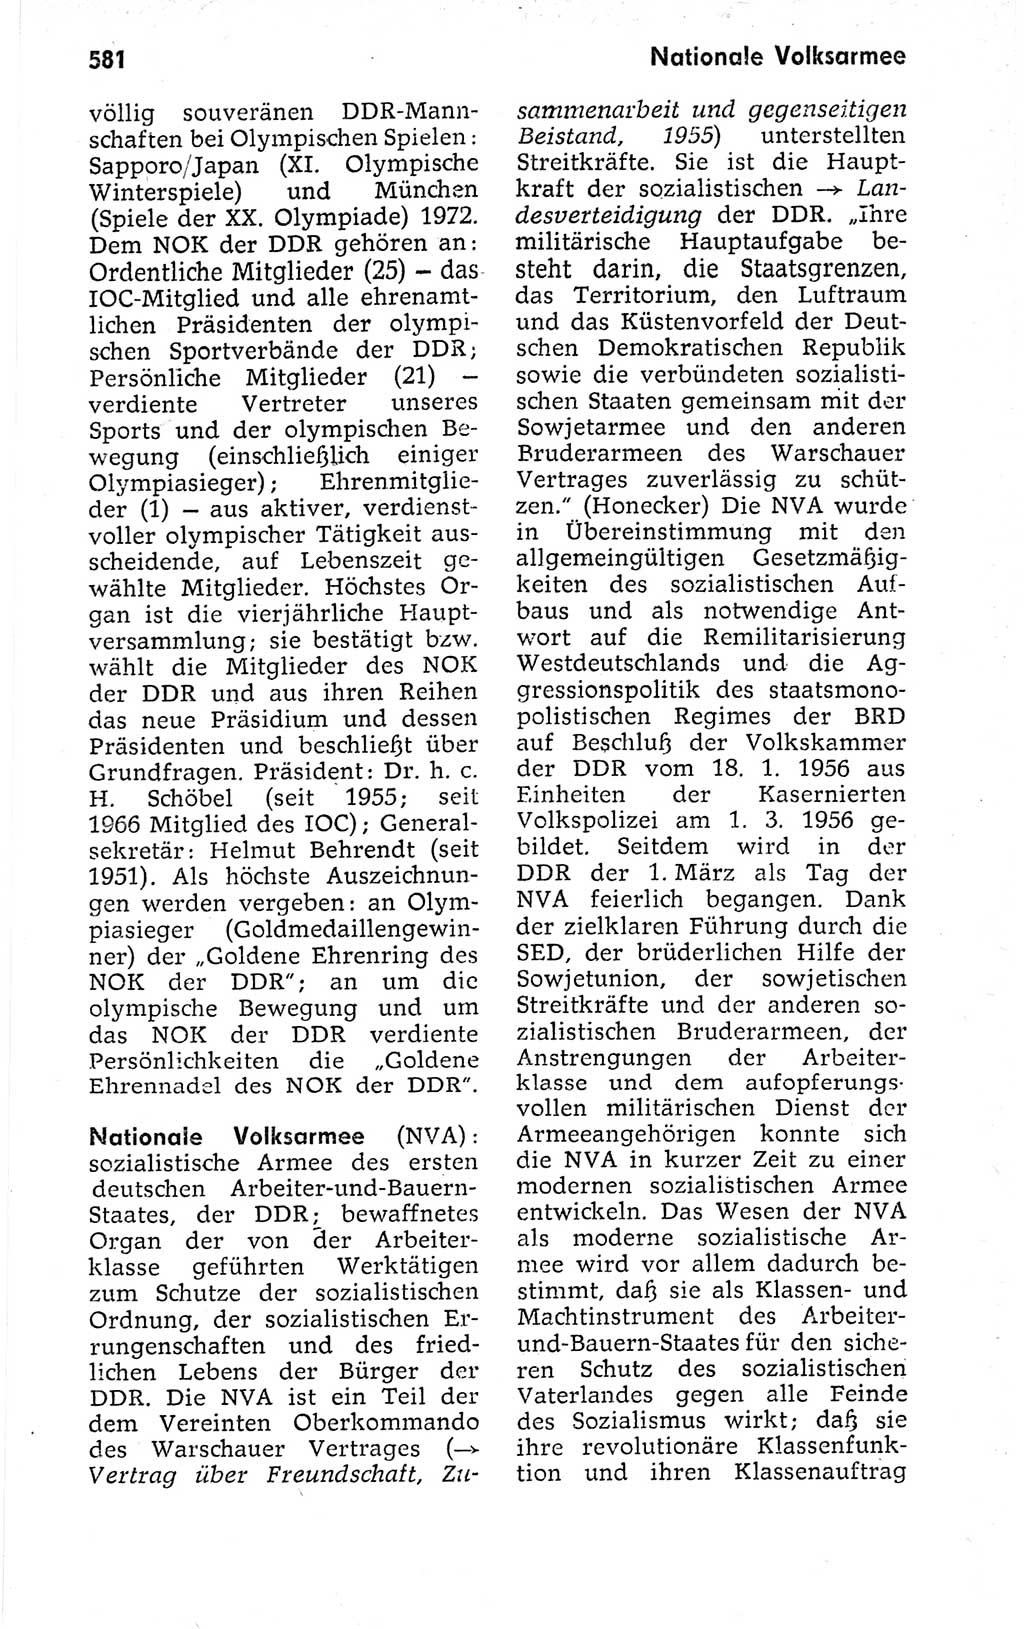 Kleines politisches Wörterbuch [Deutsche Demokratische Republik (DDR)] 1973, Seite 581 (Kl. pol. Wb. DDR 1973, S. 581)